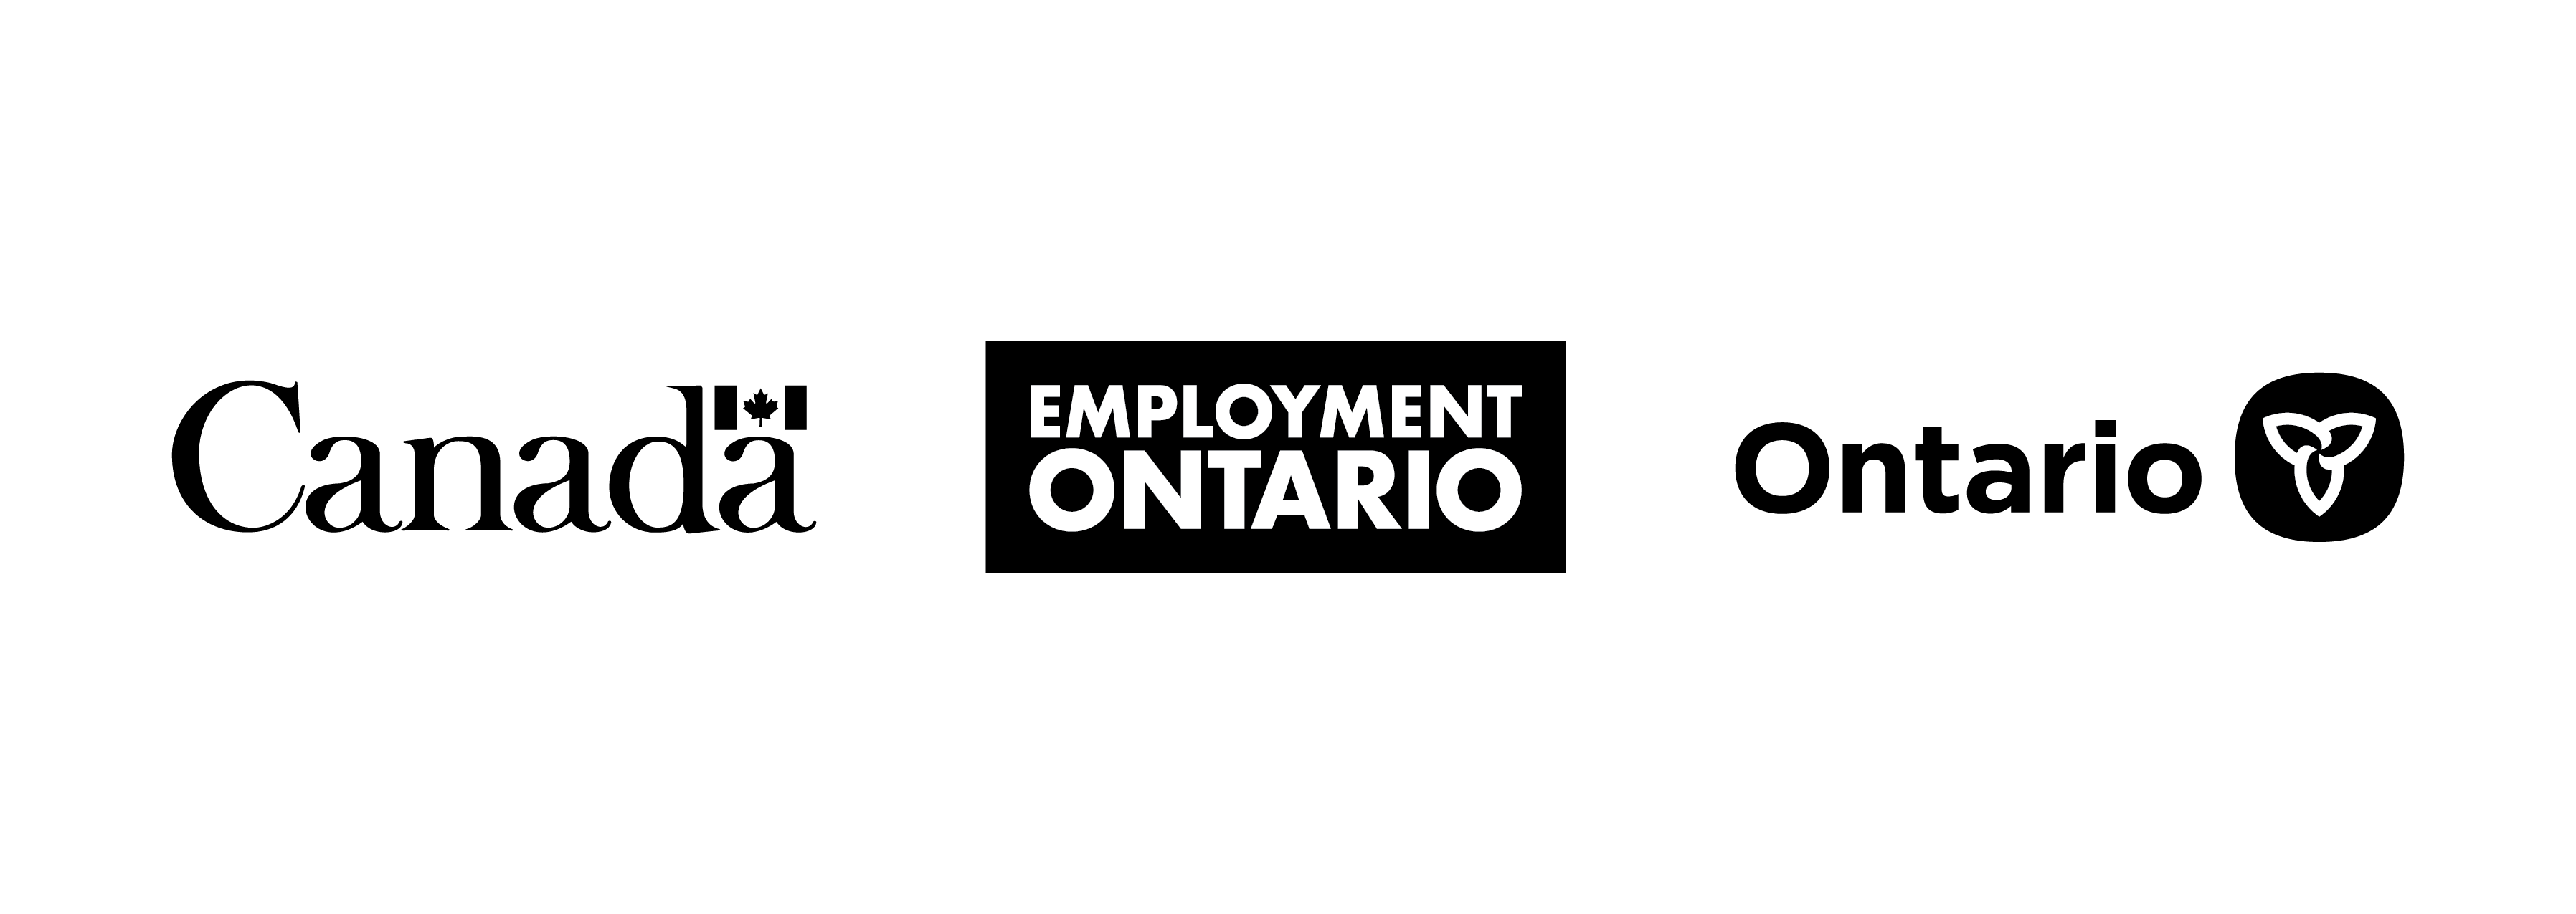 Canada Employment Ontario